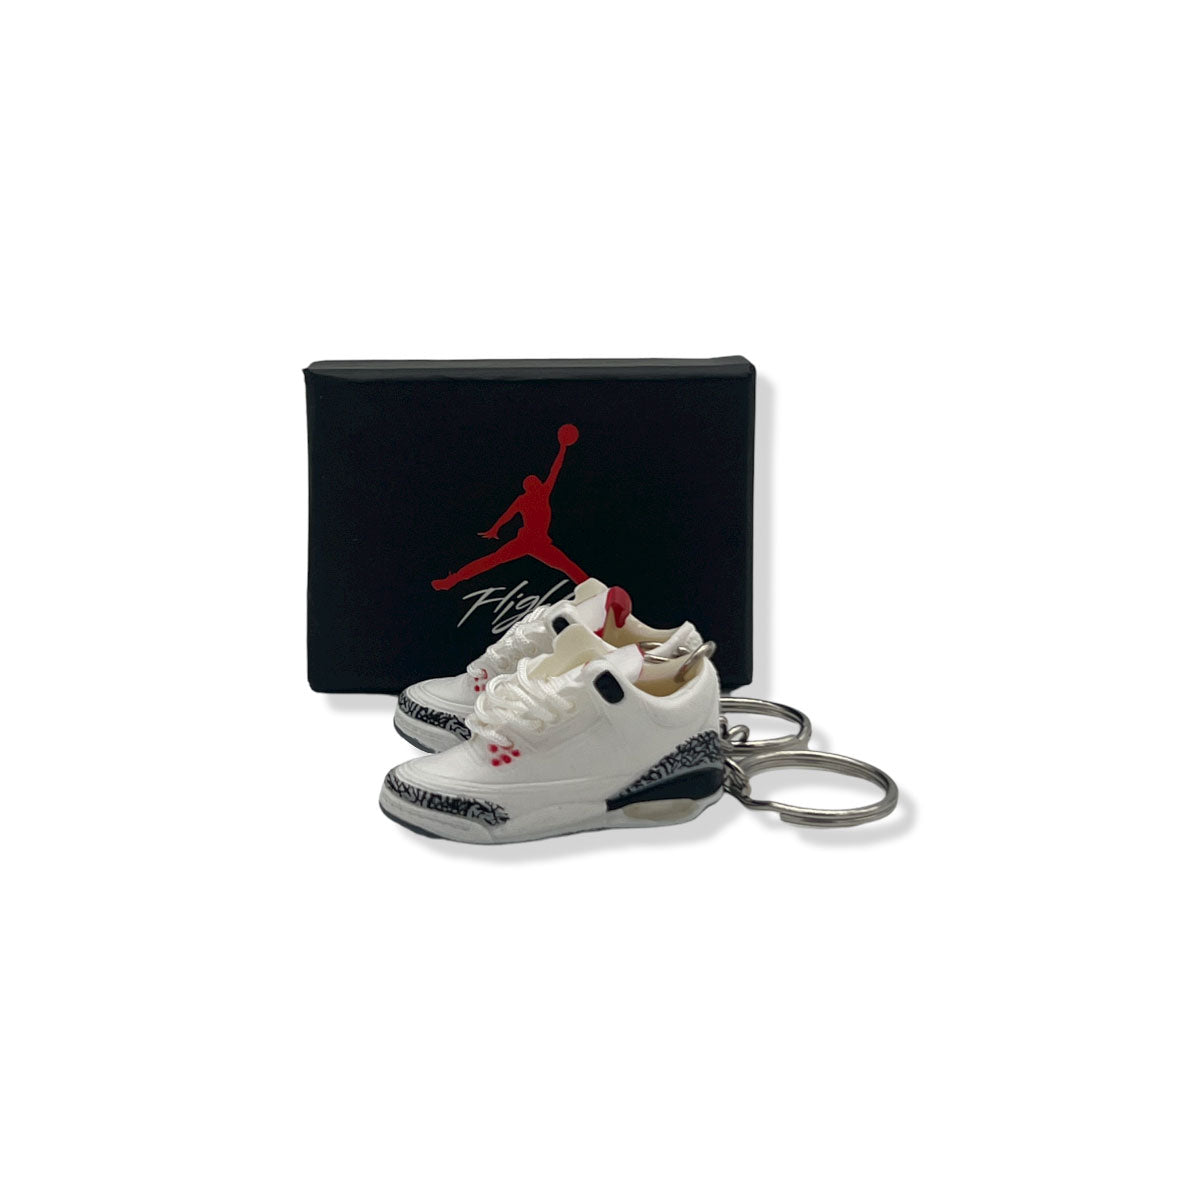 3D Sneaker Keychain- Air Jordan 3 White Cement Pair